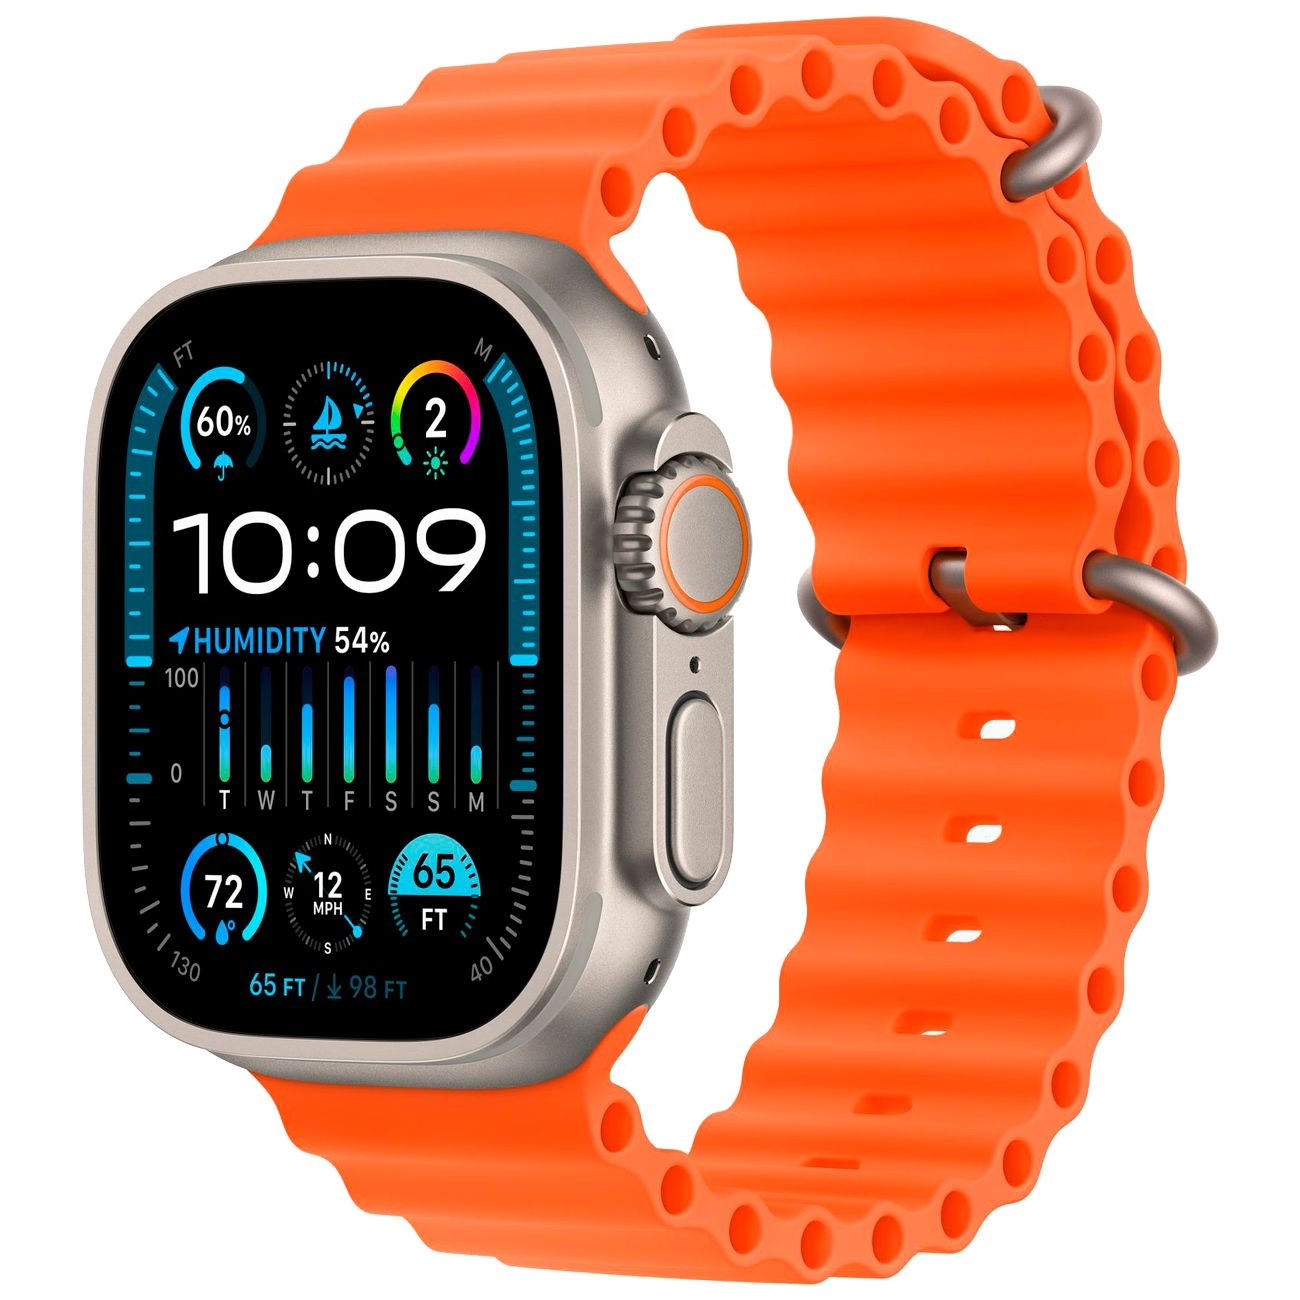 Купить смарт-часы apple watch ultra 2 ocean band orange Apple Watch Ultra 2 в официальном магазине Apple, Samsung, Xiaomi. iPixel.ru Купить, заказ, кредит, рассрочка, отзывы,  характеристики, цена,  фотографии, в подарок.